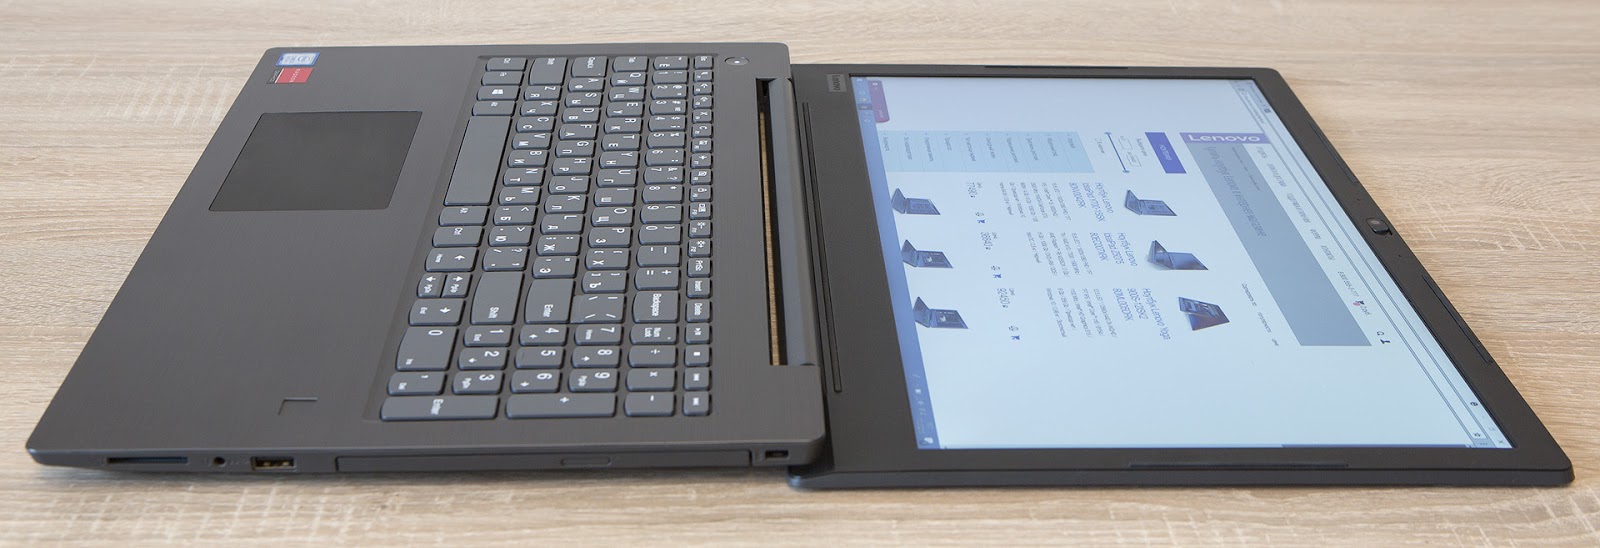 Обзор ноутбука Lenovo V330-15: надёжный офисный трудяга - 15